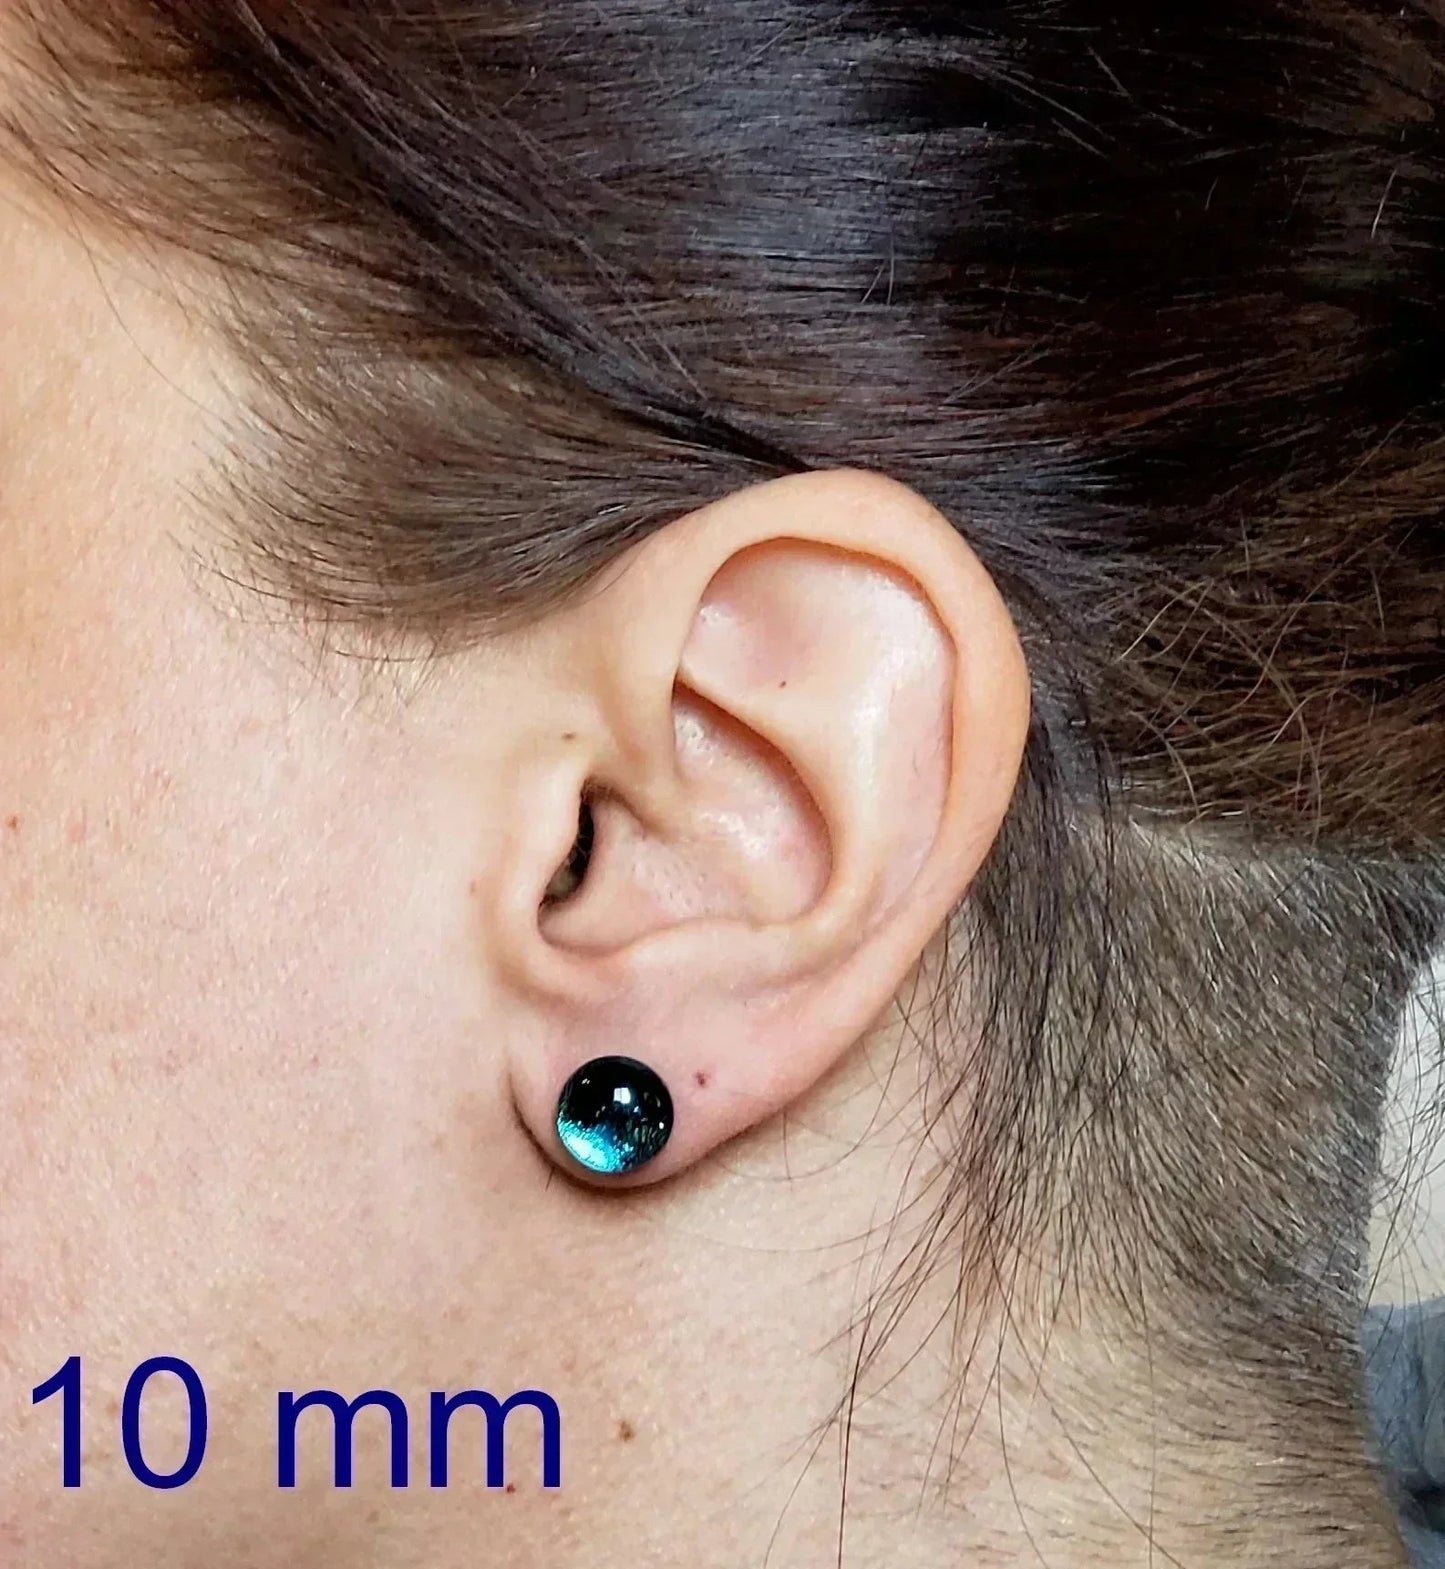 +/- 12 mm, Boucles d'oreilles dépareillées, verre fusion #86 - Bijoux Le fil d'Ariane